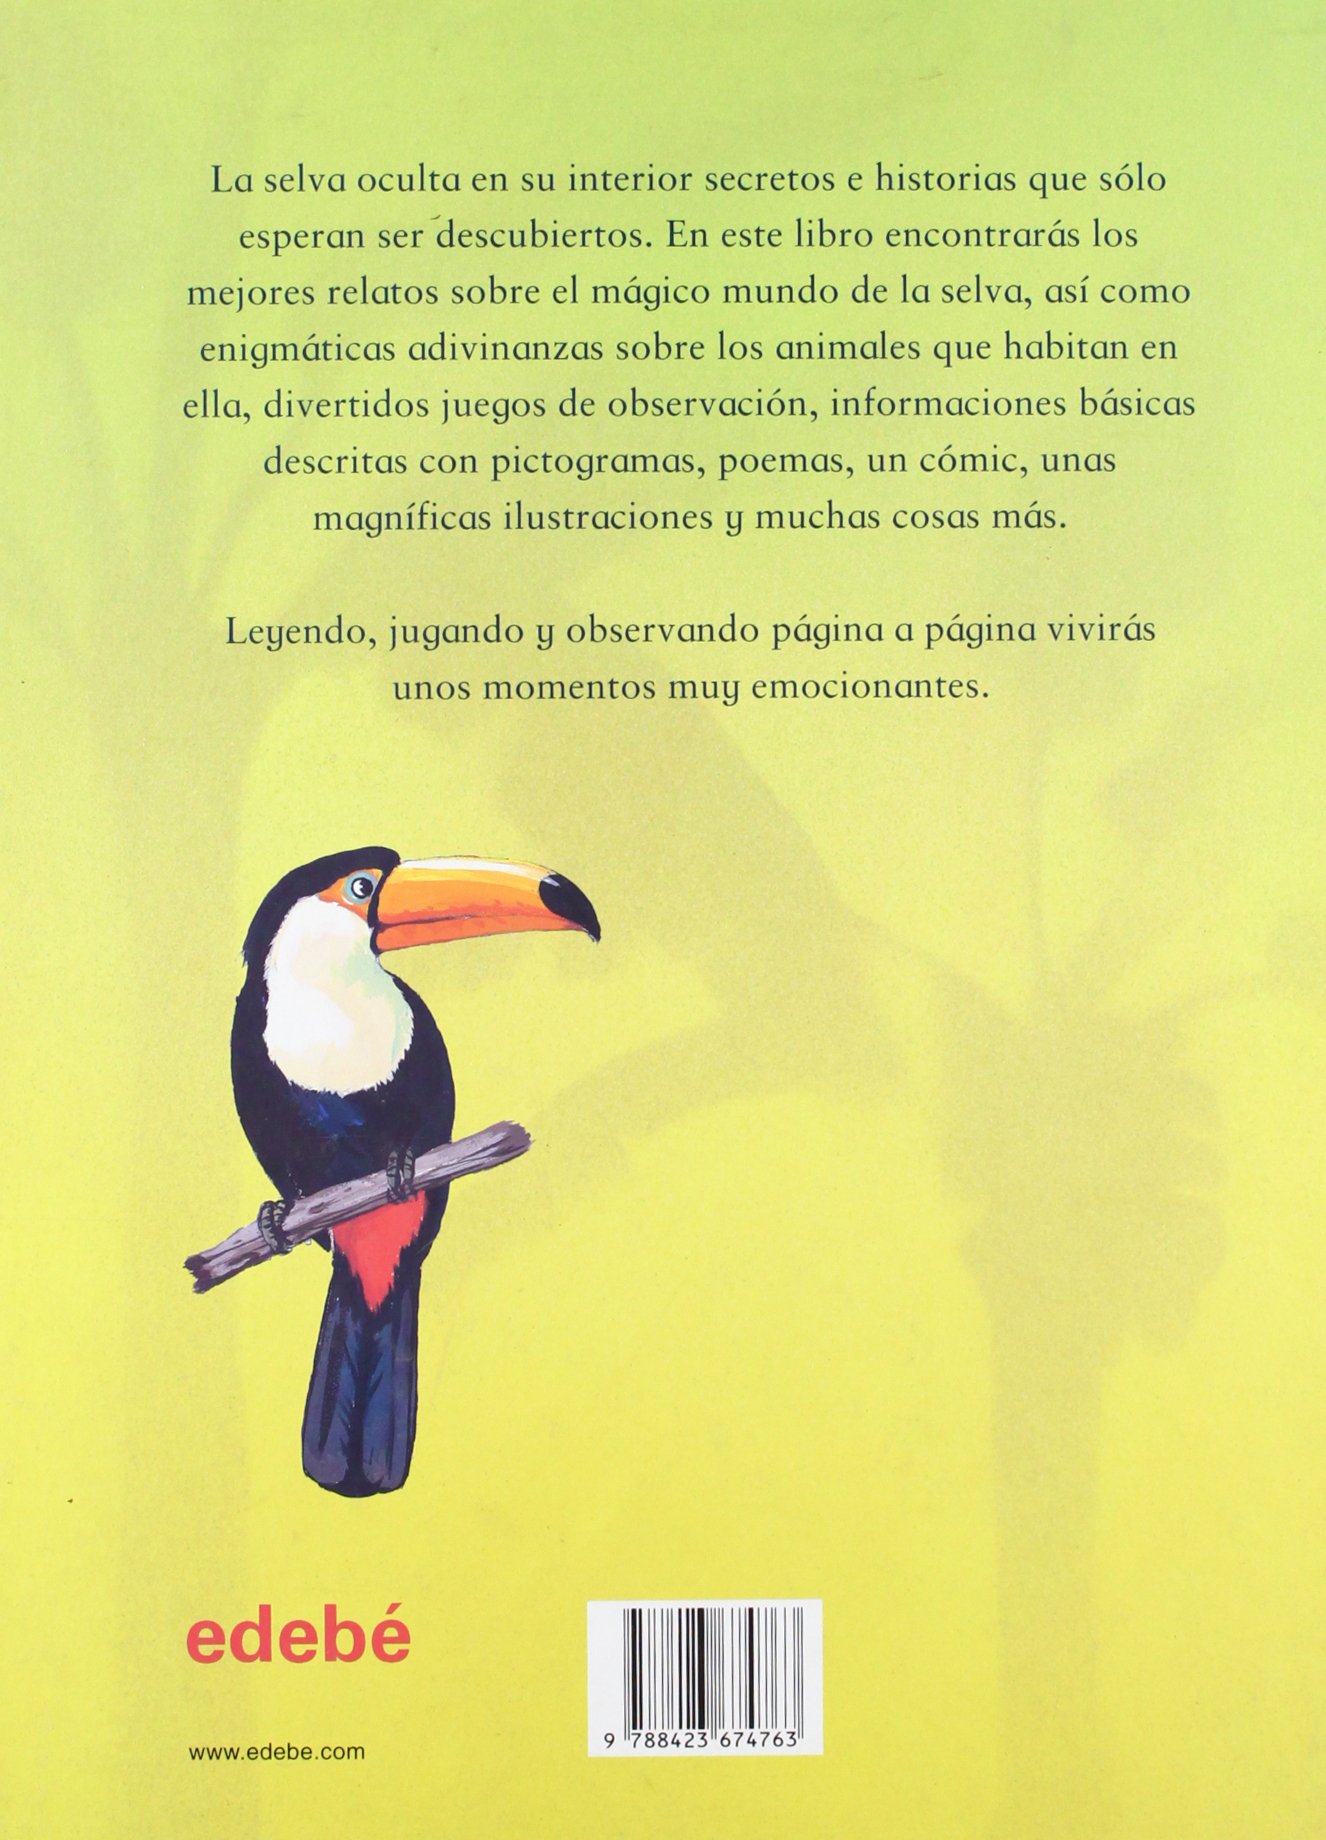 Libro: Cuentos de la selva y otras historias por Ramón Díaz